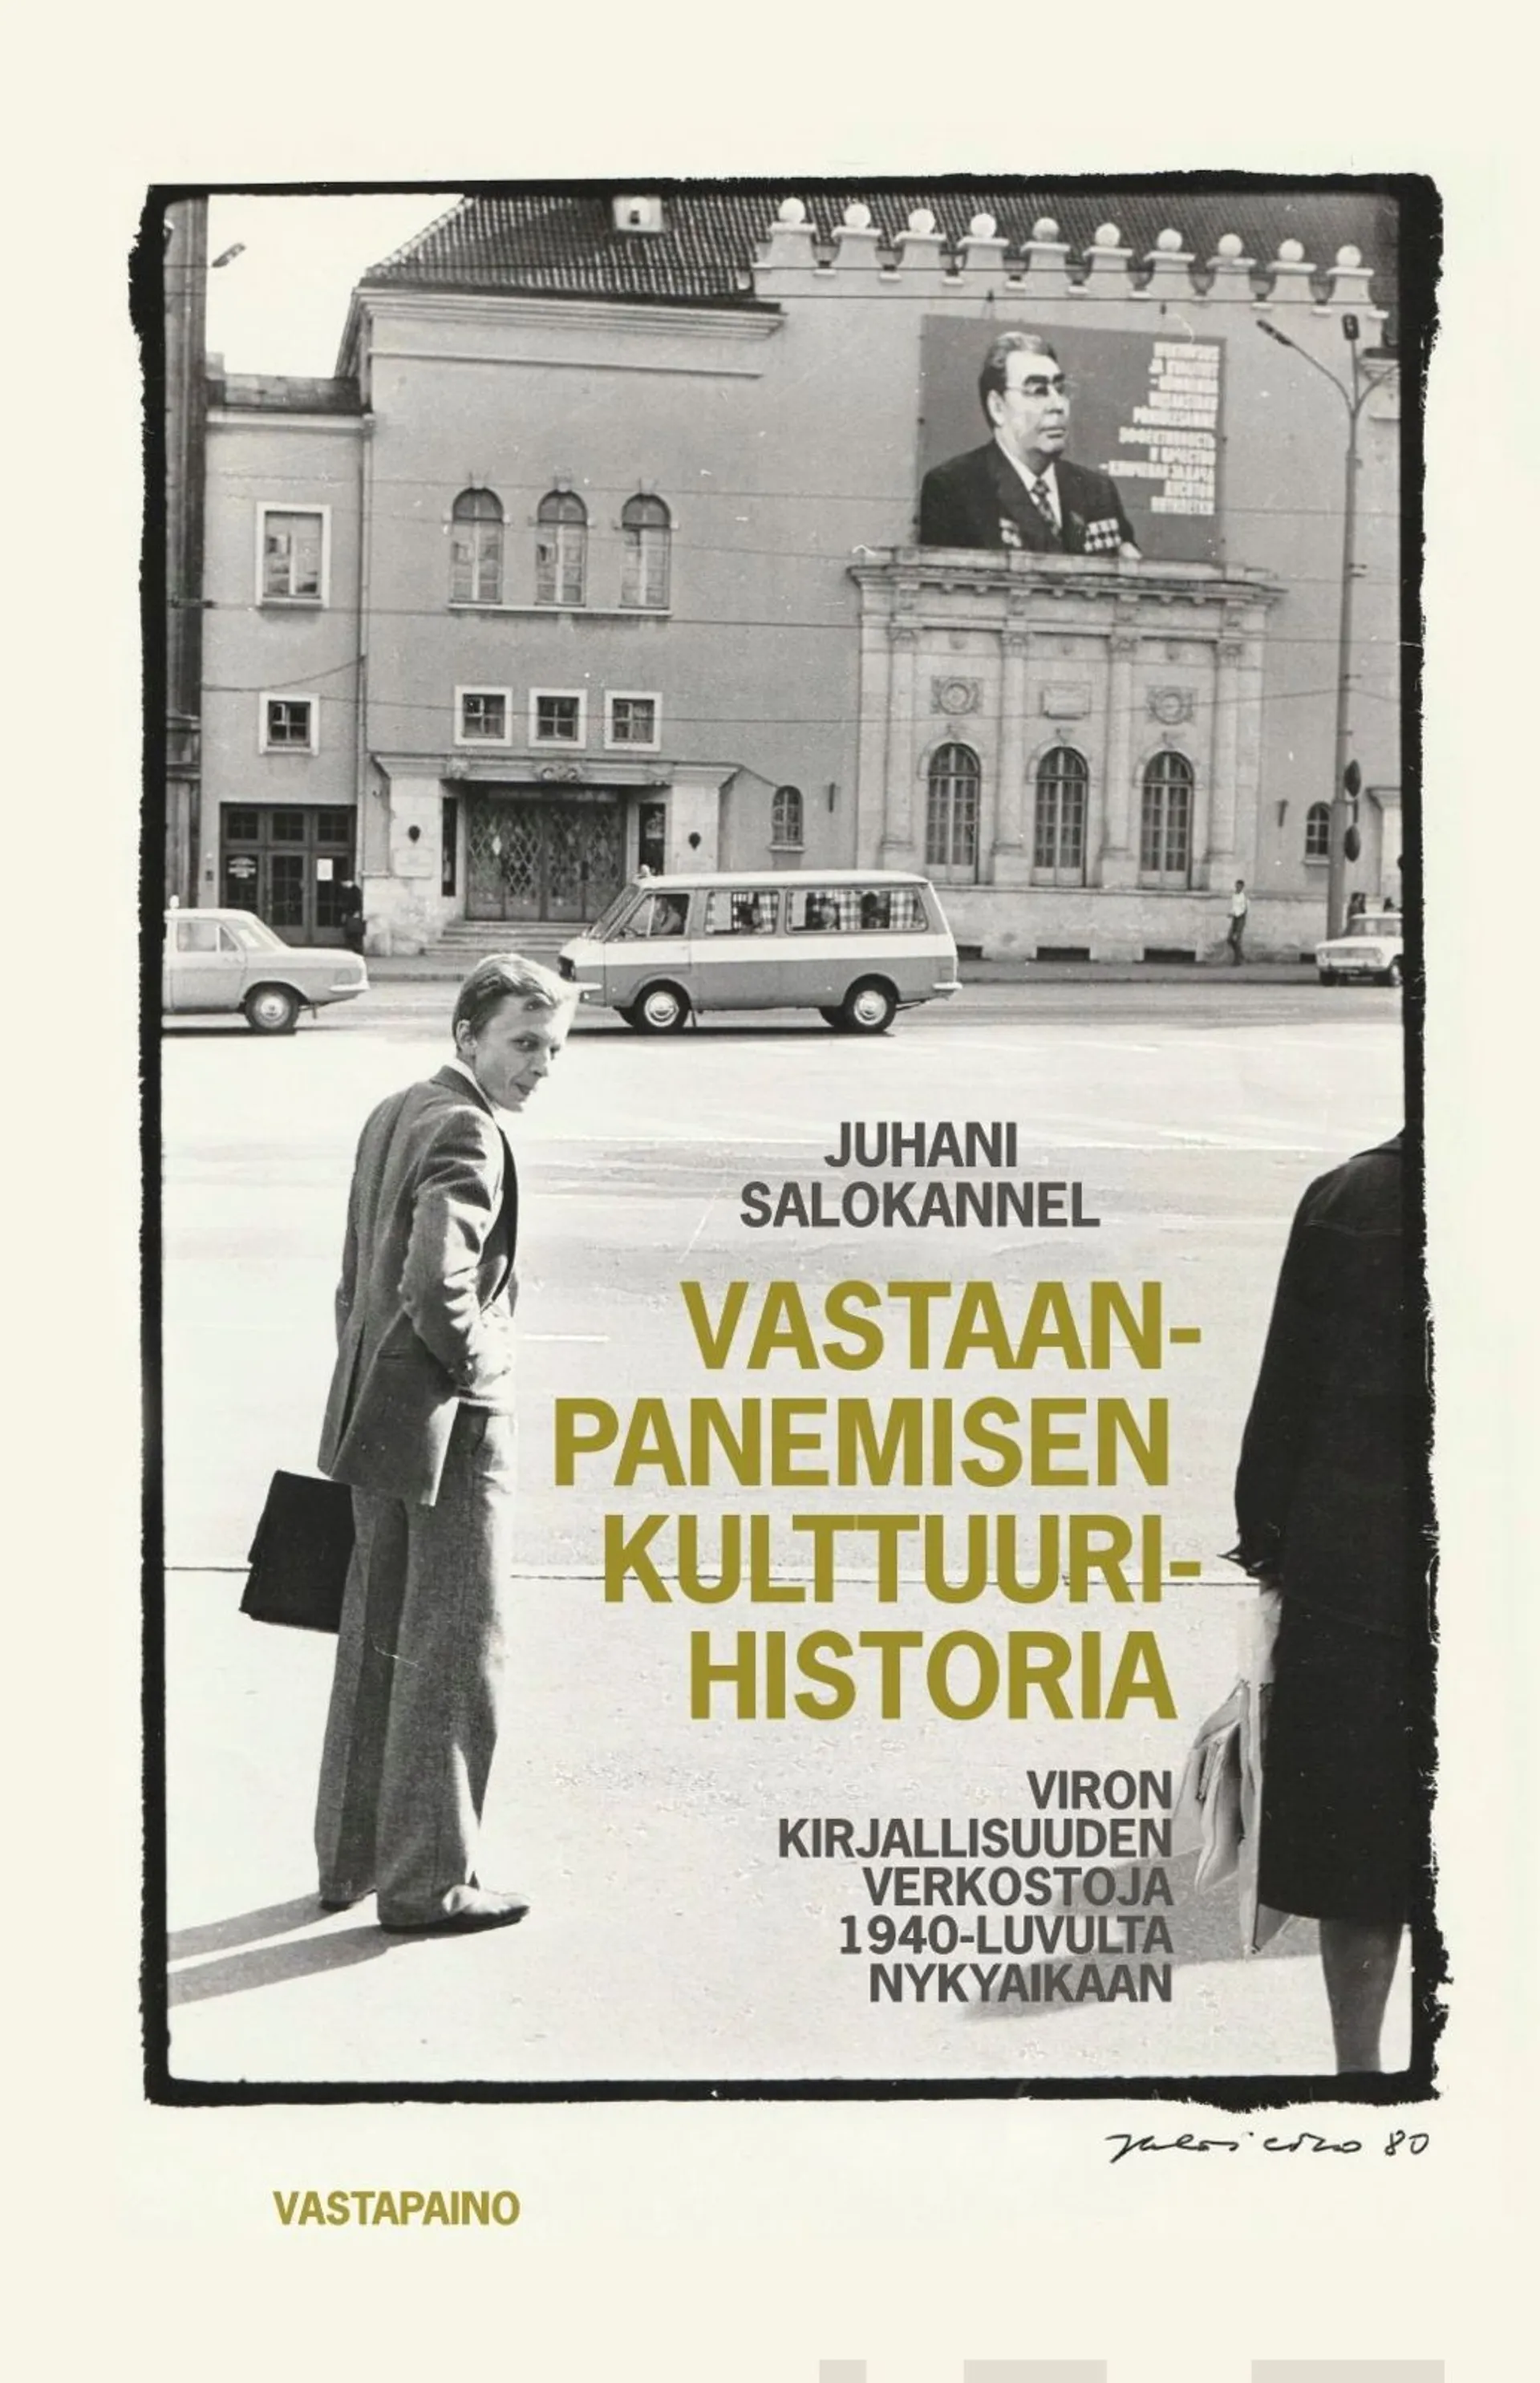 Salokannel, Vastaanpanemisen kulttuurihistoria - Viron kirjallisuuden verkostoja 1940-luvulta nykyaikaan